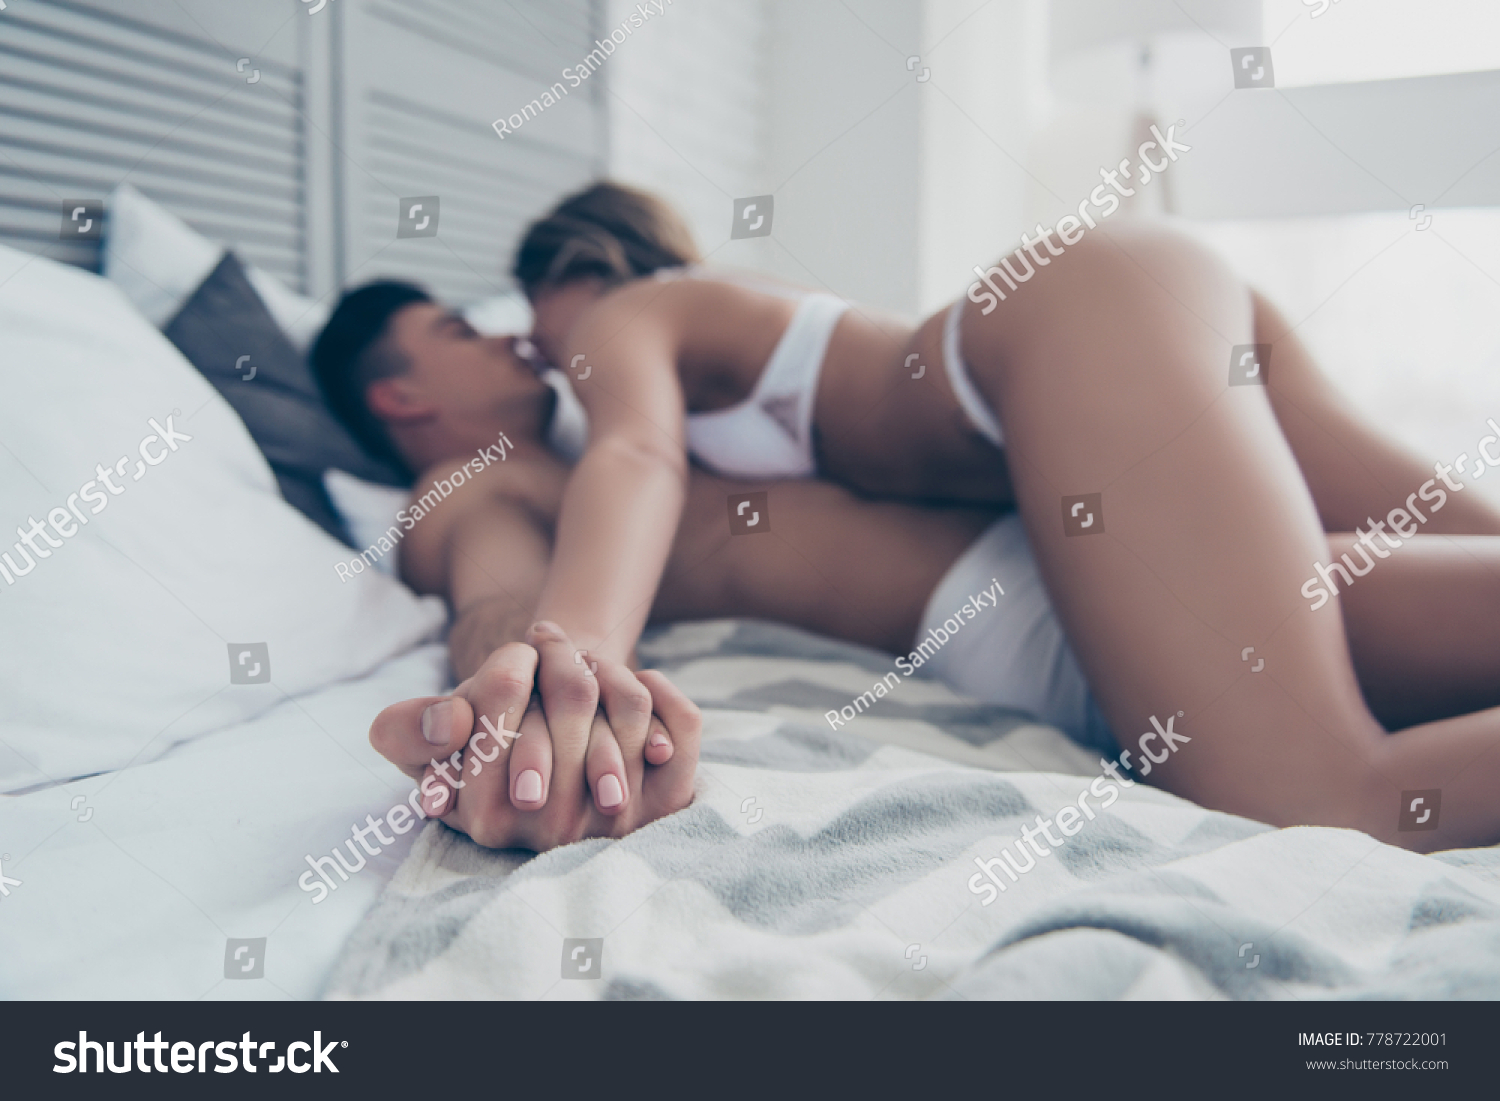 Hand Hand Hot Naughty Wife Husband Stock Photo 778722001 Shutterstock